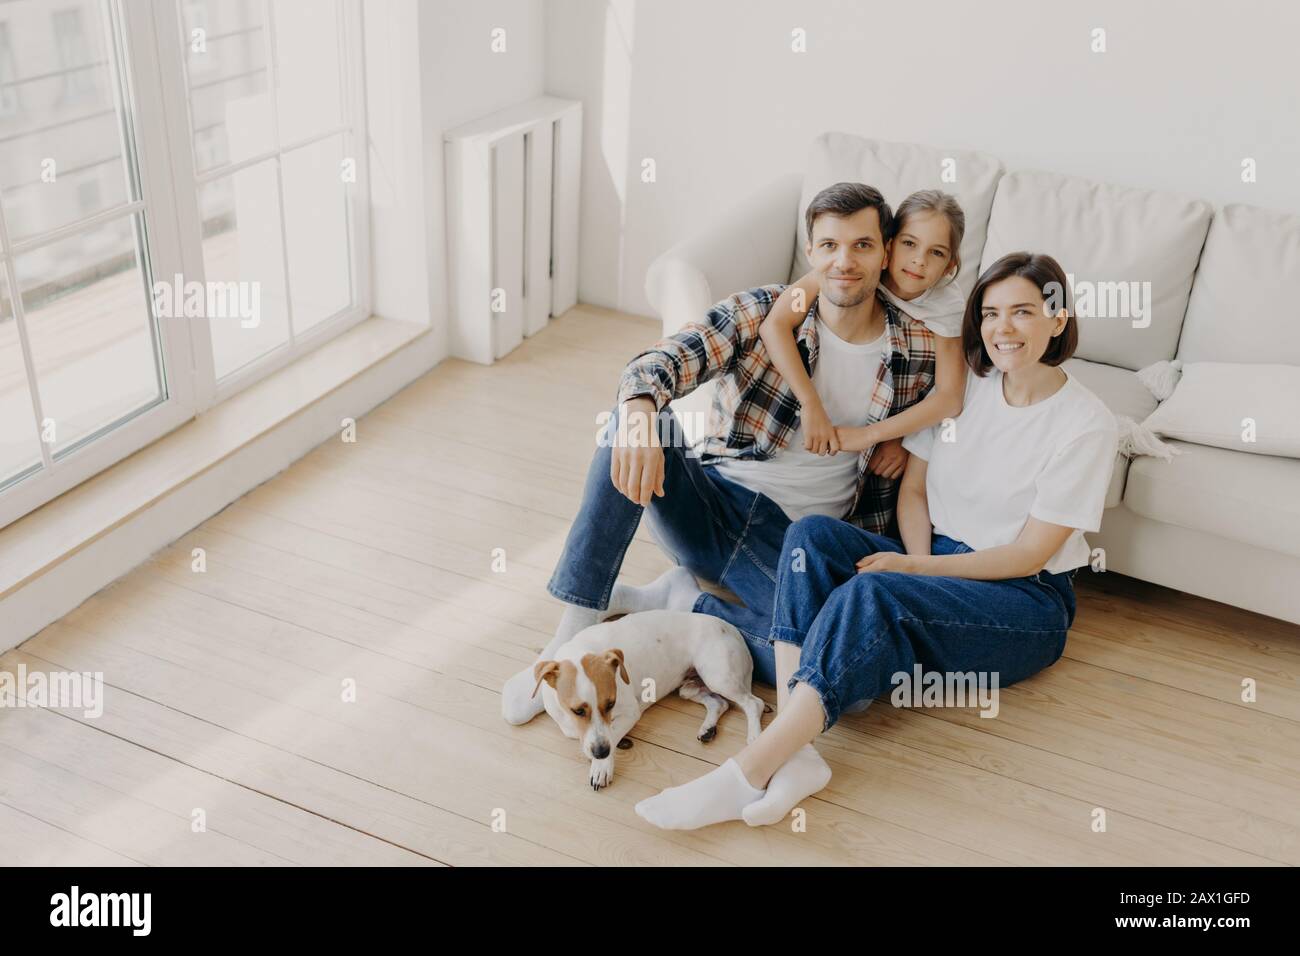 Schöne europäische Familie von Vater, Mutter und ihrer Tochter sitzen auf dem Boden in der Nähe des Sofas in einem geräumigen weißen Raum, Stammhund liegt in der Nähe, haben einen beweglichen Tag, ch Stockfoto